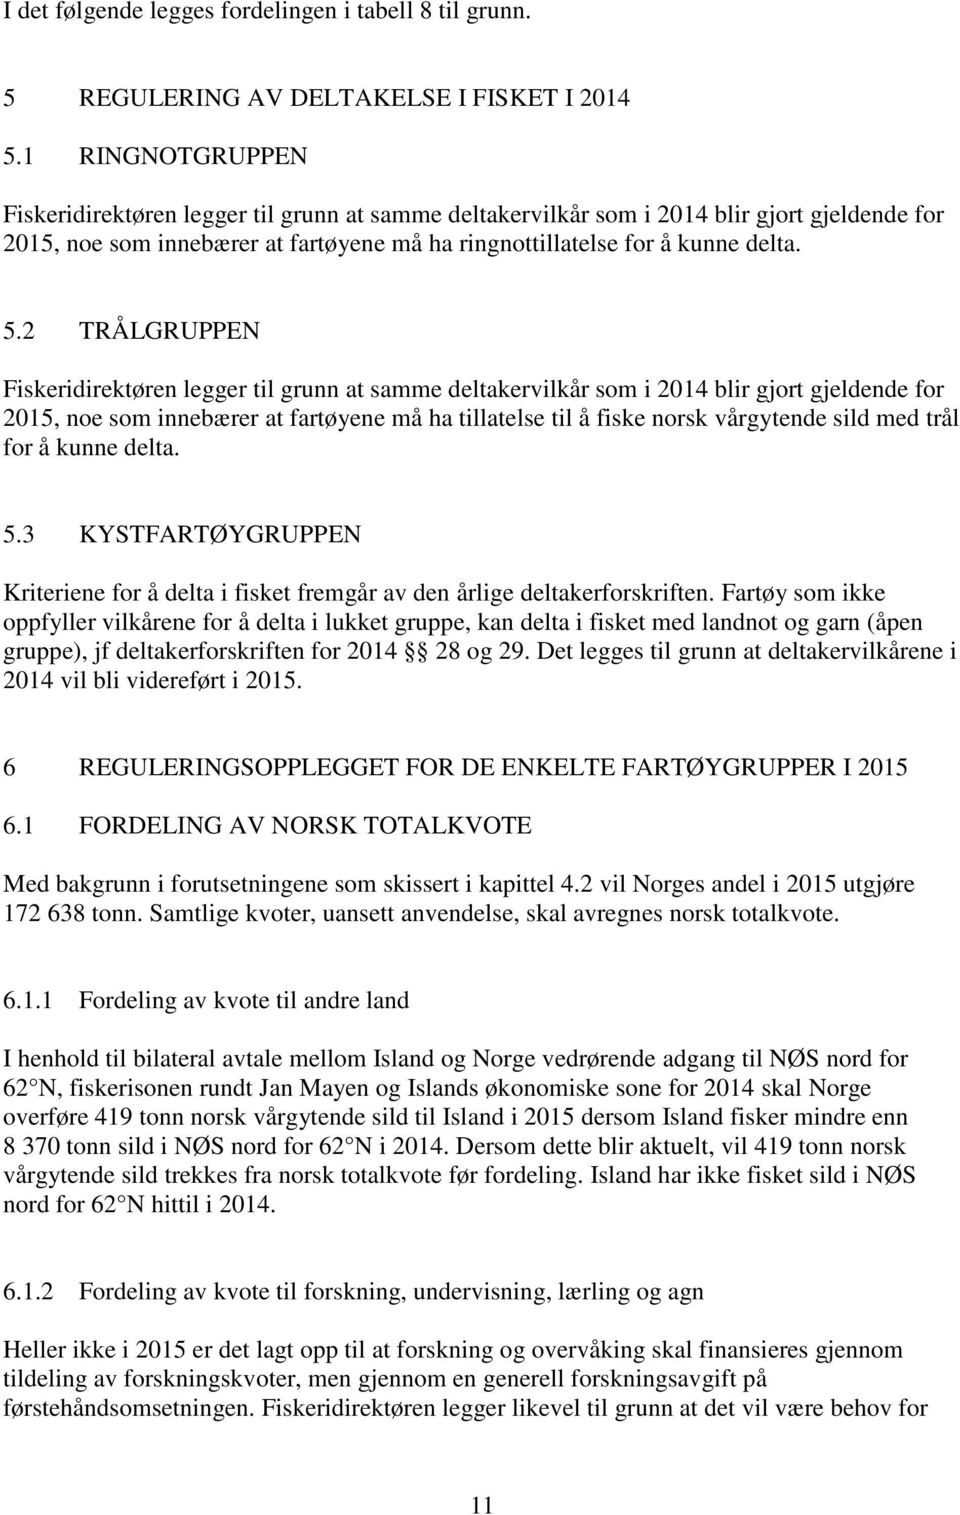 2 TRÅLGRUPPEN Fiskeridirektøren legger til grunn at samme deltakervilkår som i 2014 blir gjort gjeldende for 2015, noe som innebærer at fartøyene må ha tillatelse til å fiske norsk vårgytende sild